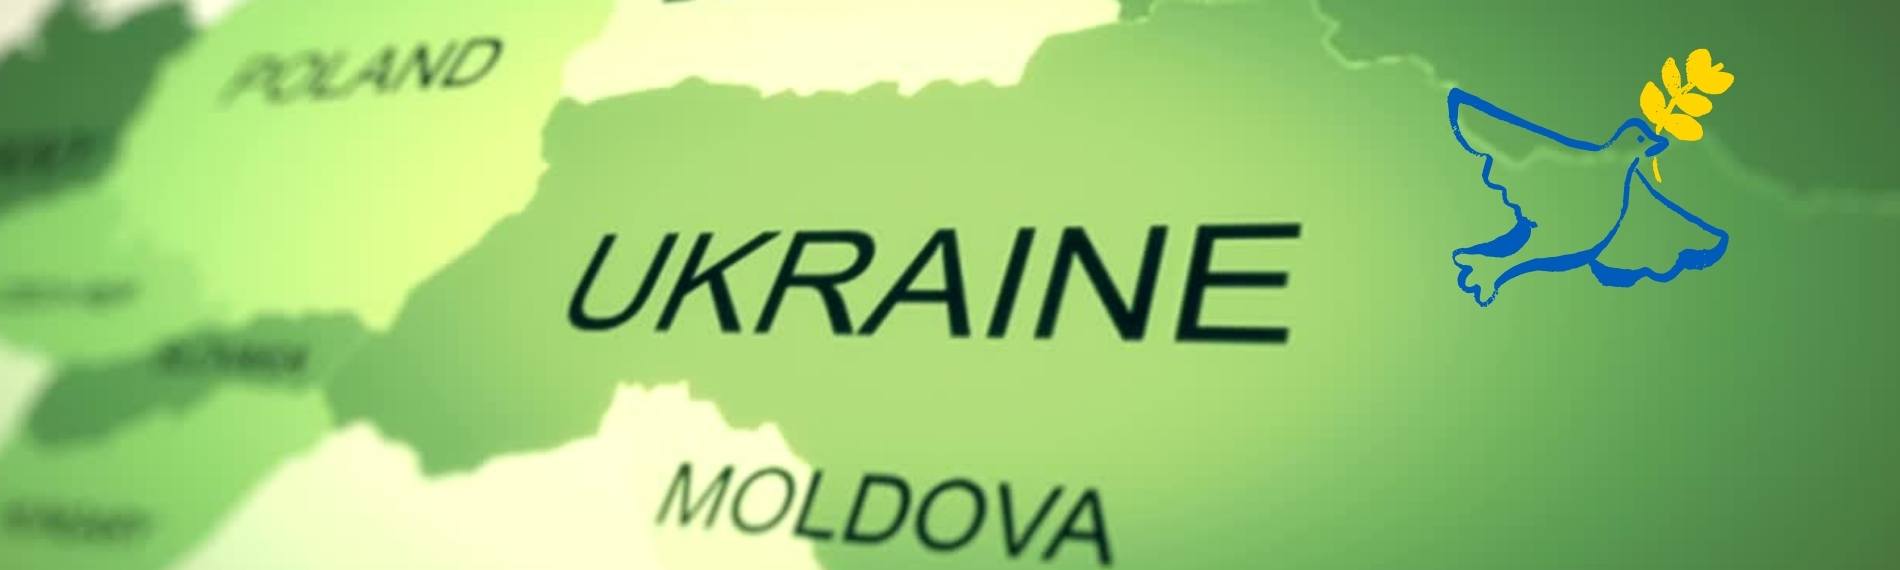 Landkarte Ukraine mit Friedenstaube